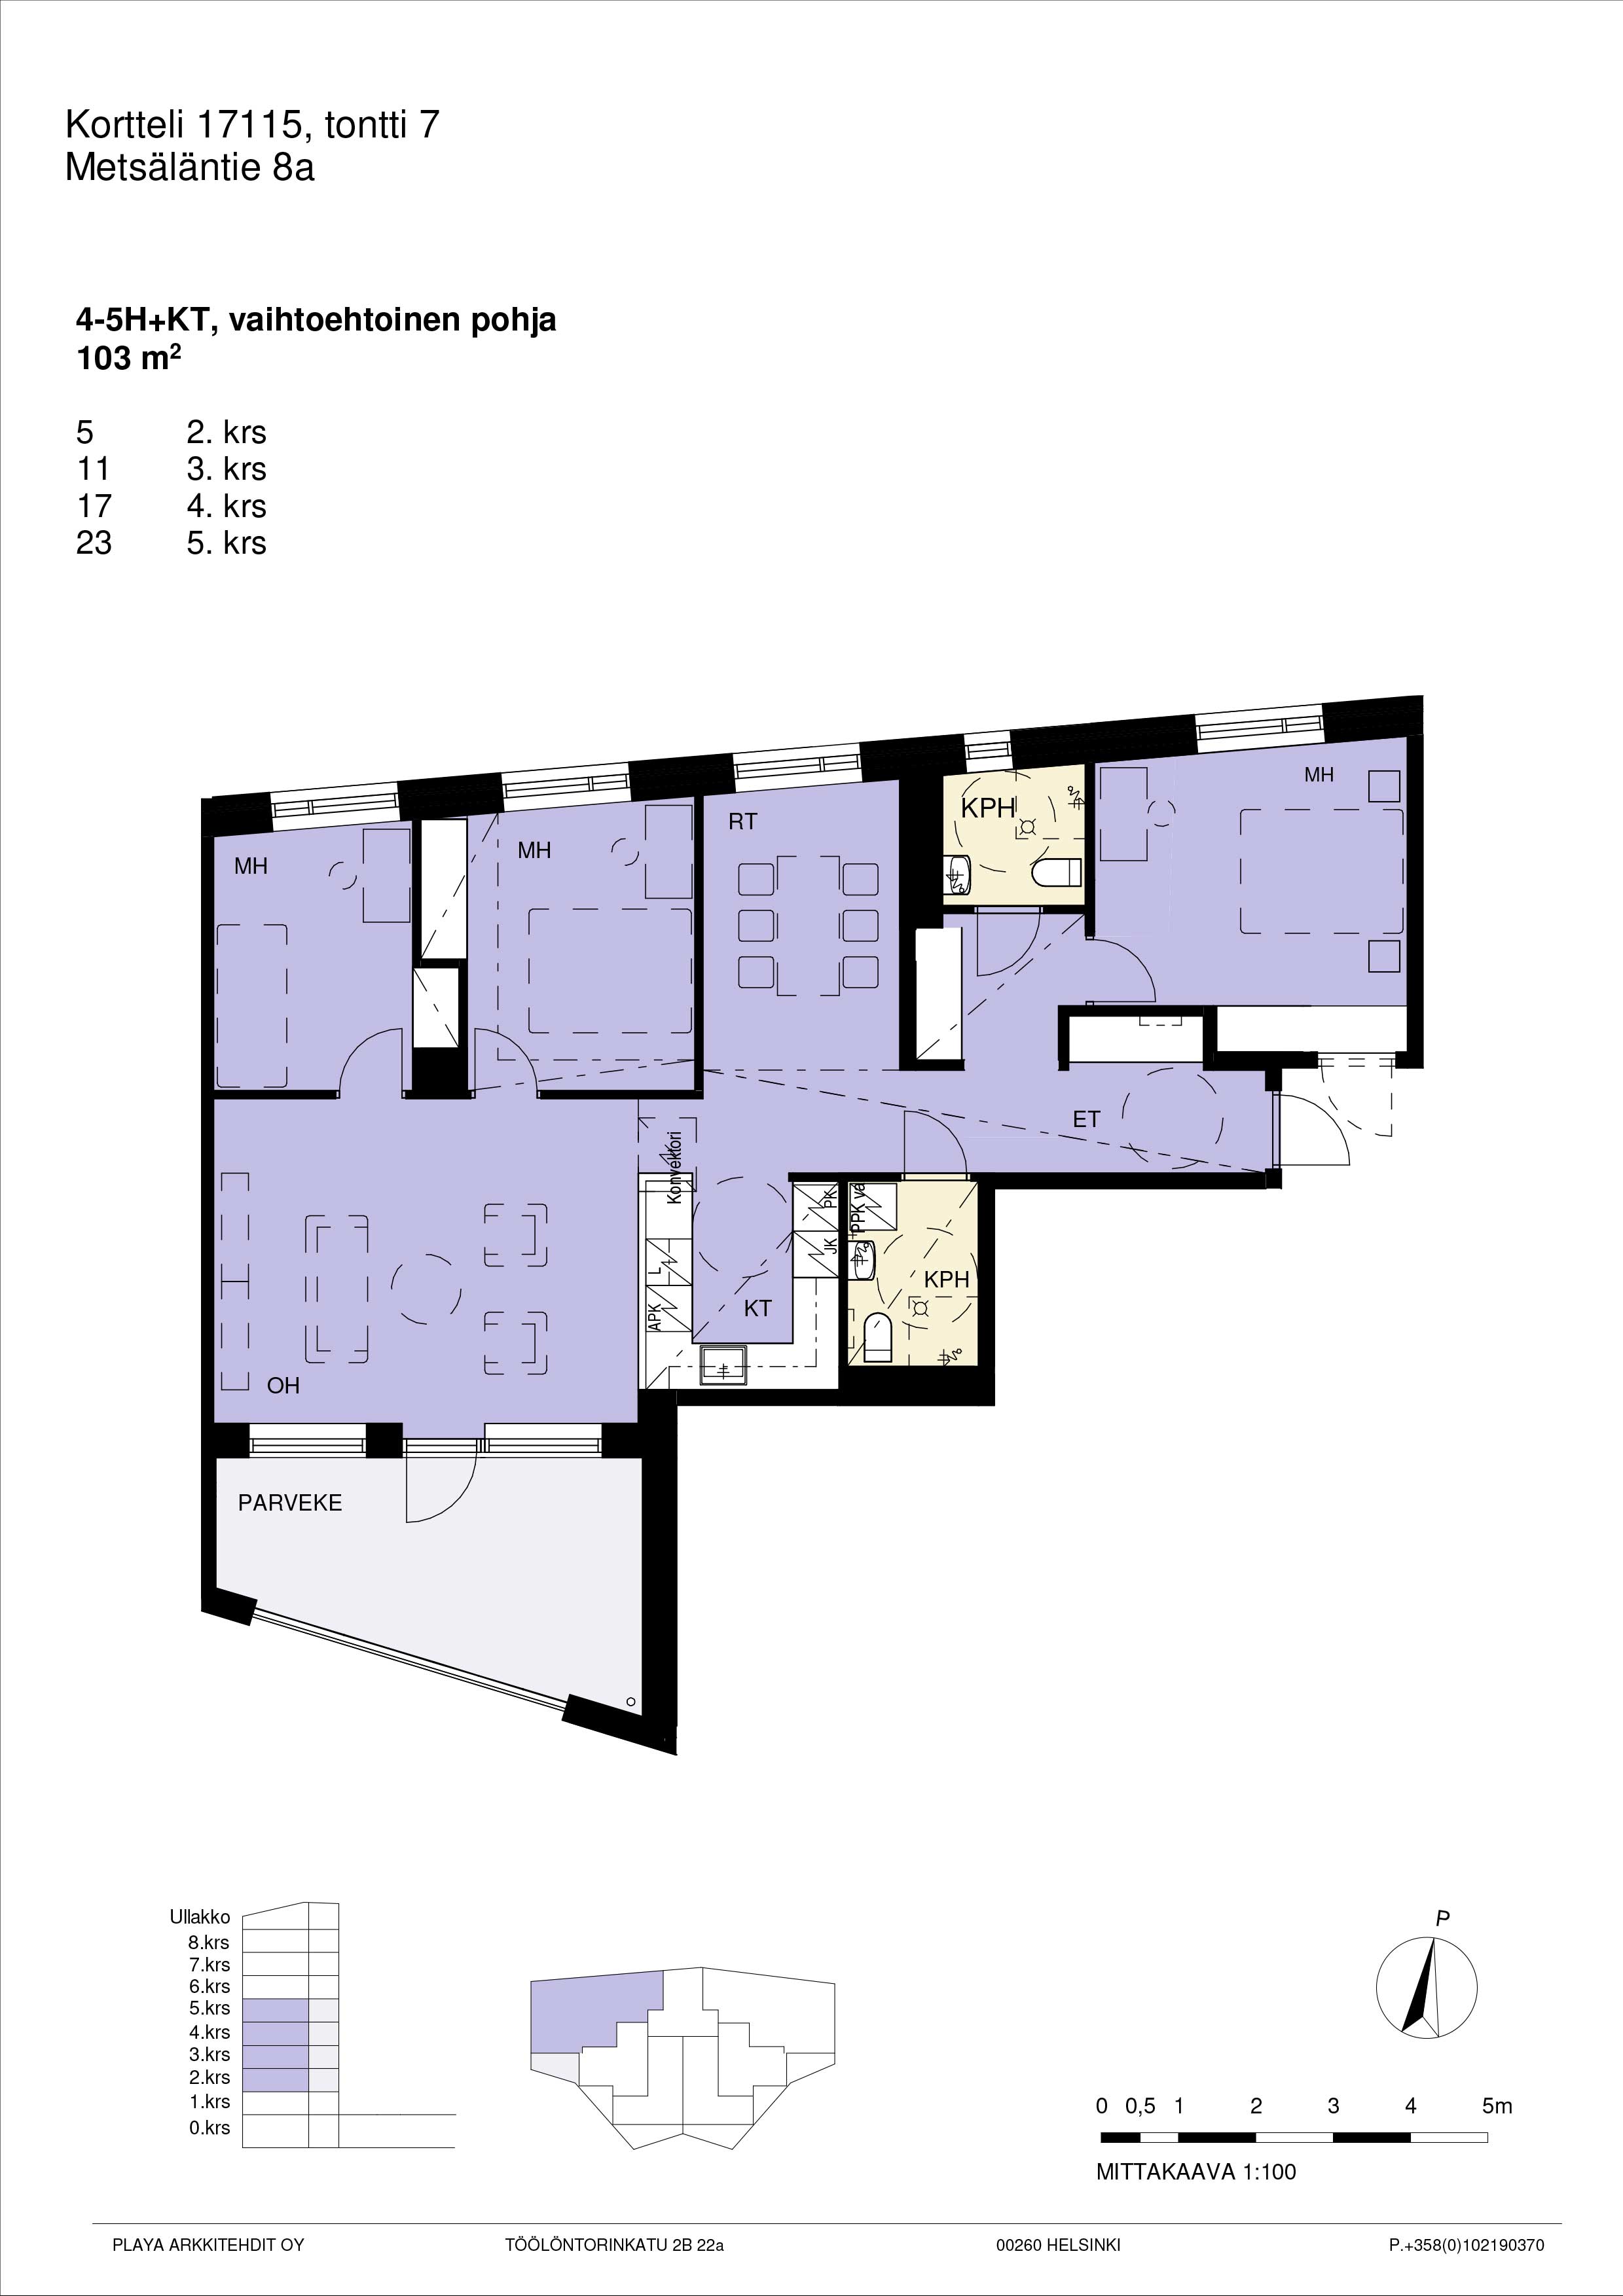 Vaihtoehtopohja: Pohjakuva A23, 4-5h+kt yhtenäinen suuri asunto 103 m2